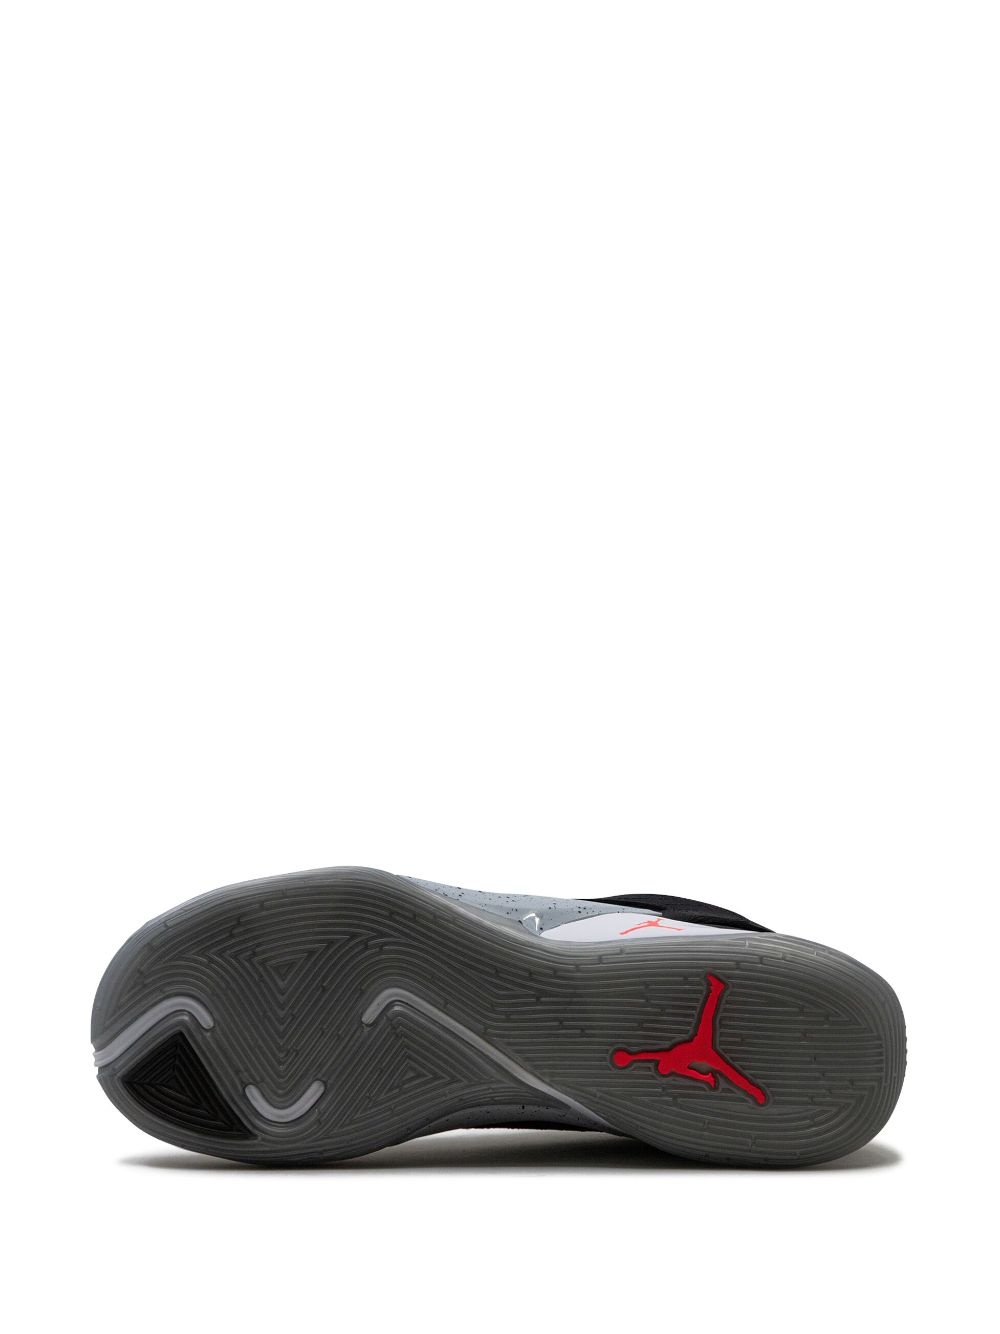 Air Jordan Luka 2 Bred PF "Core Black" sneakers - 4